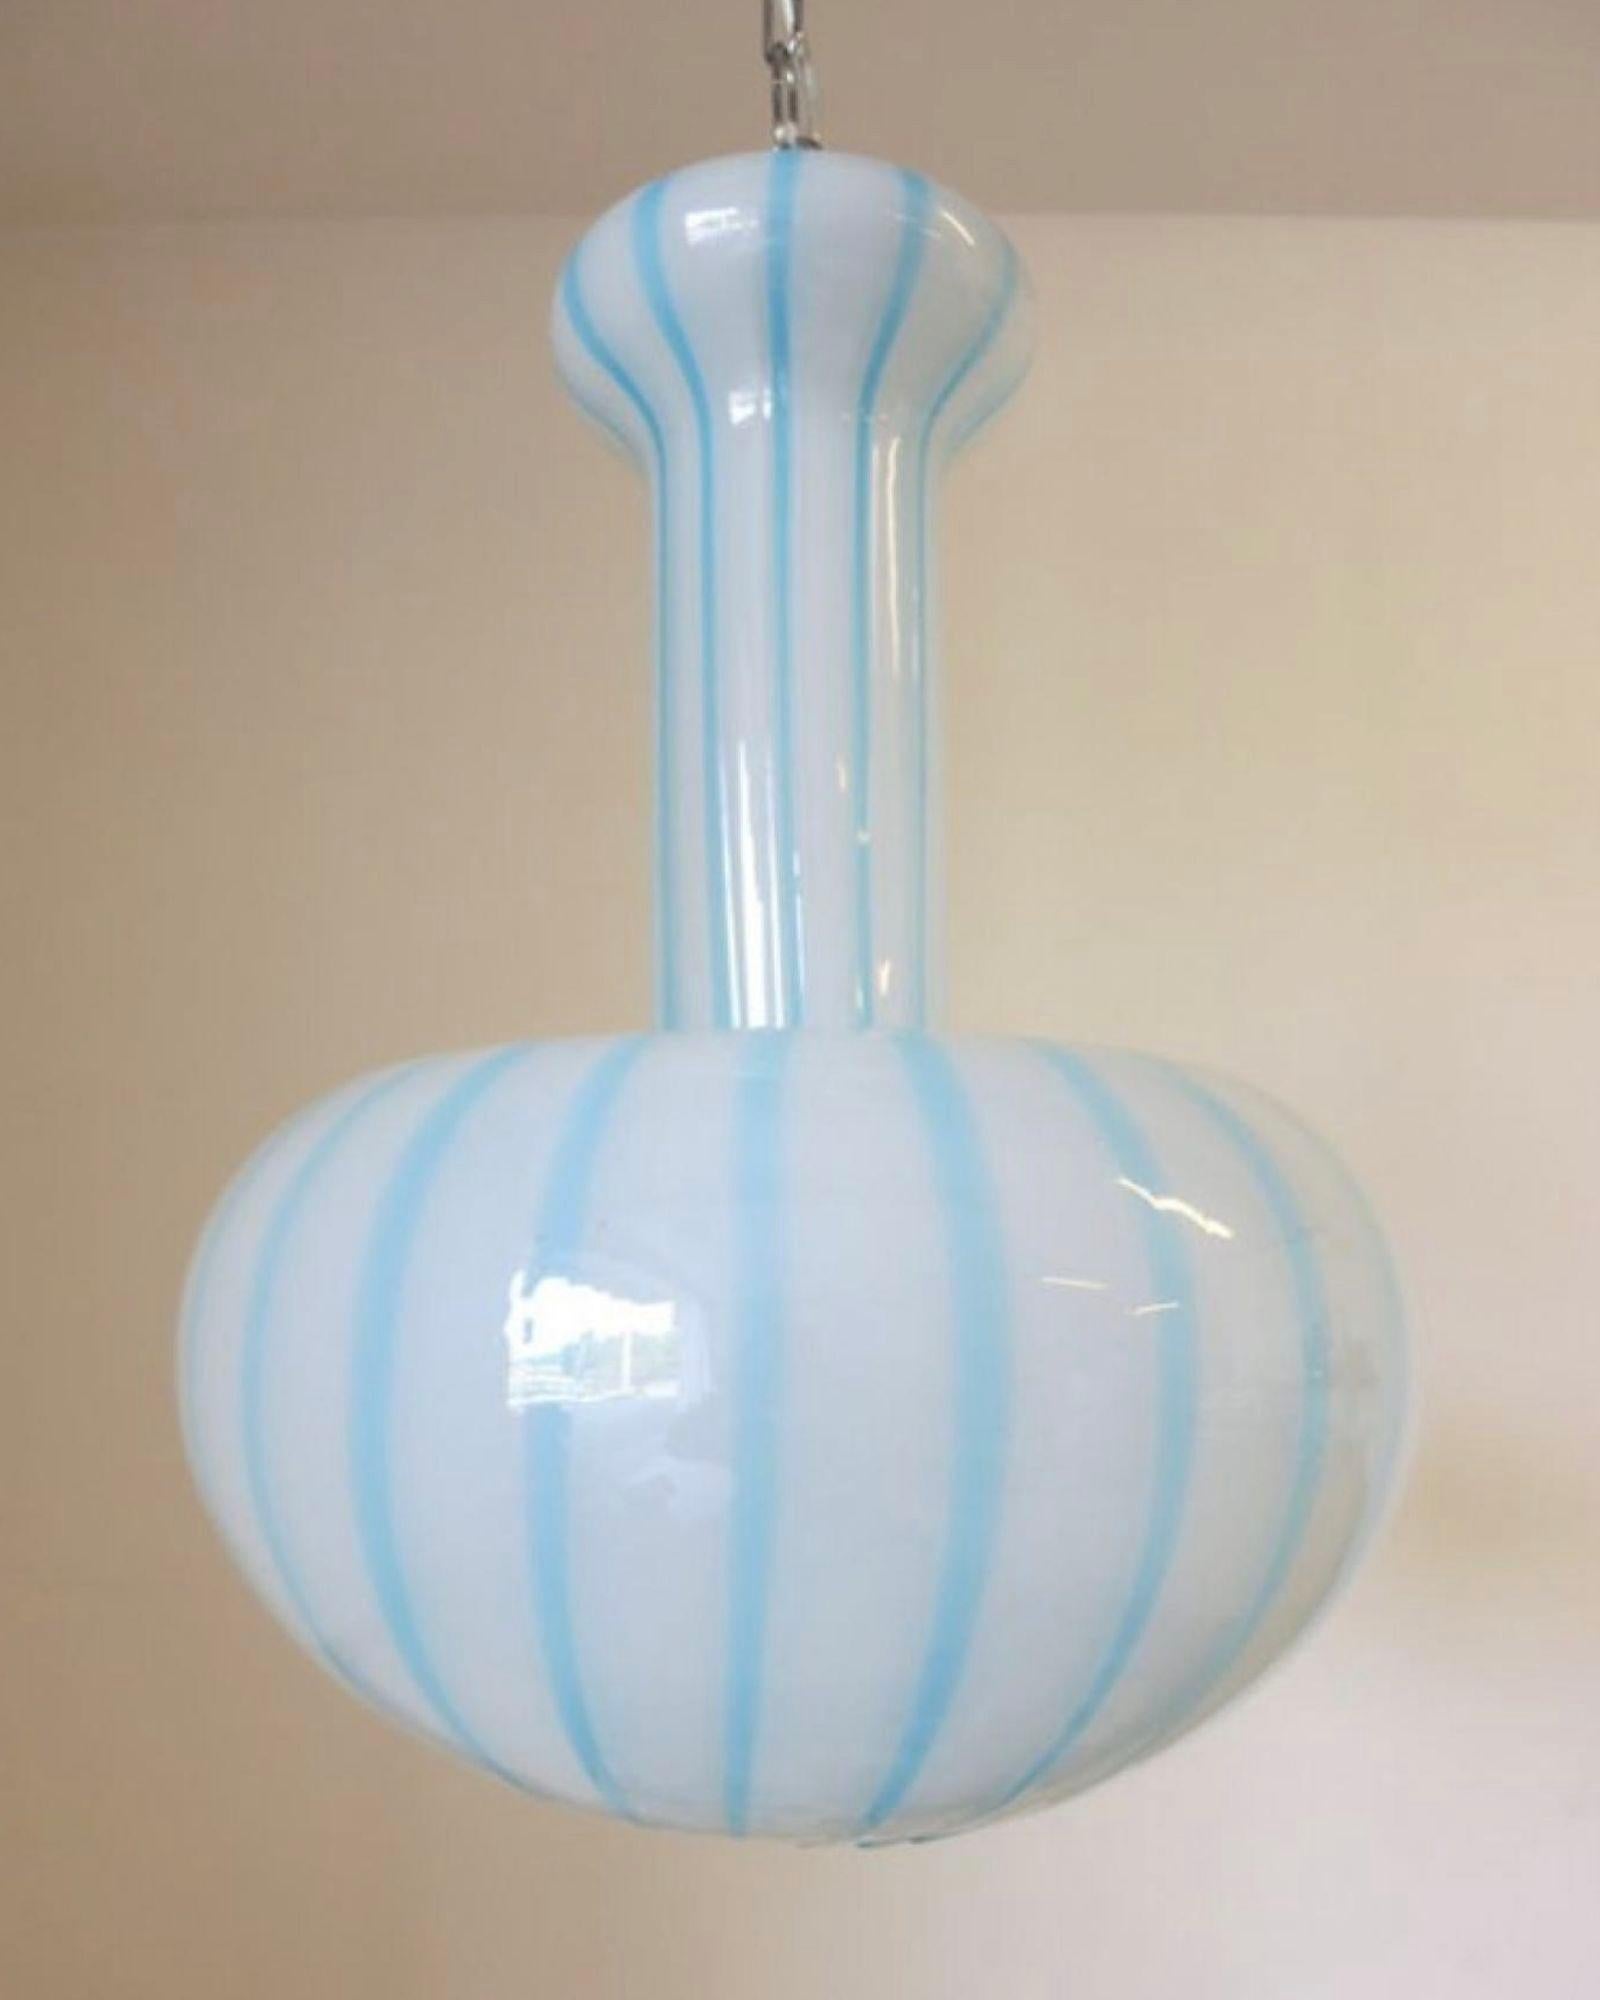 Pendentif vintage italien en verre de Murano blanc givré et rayures bleues / Design by Salviati circa 1960's / Made in Italy
3 lumières / Mesures : Hauteur : 23 pouces plus la chaîne et le baldaquin / Diamètre : 15 pouces.